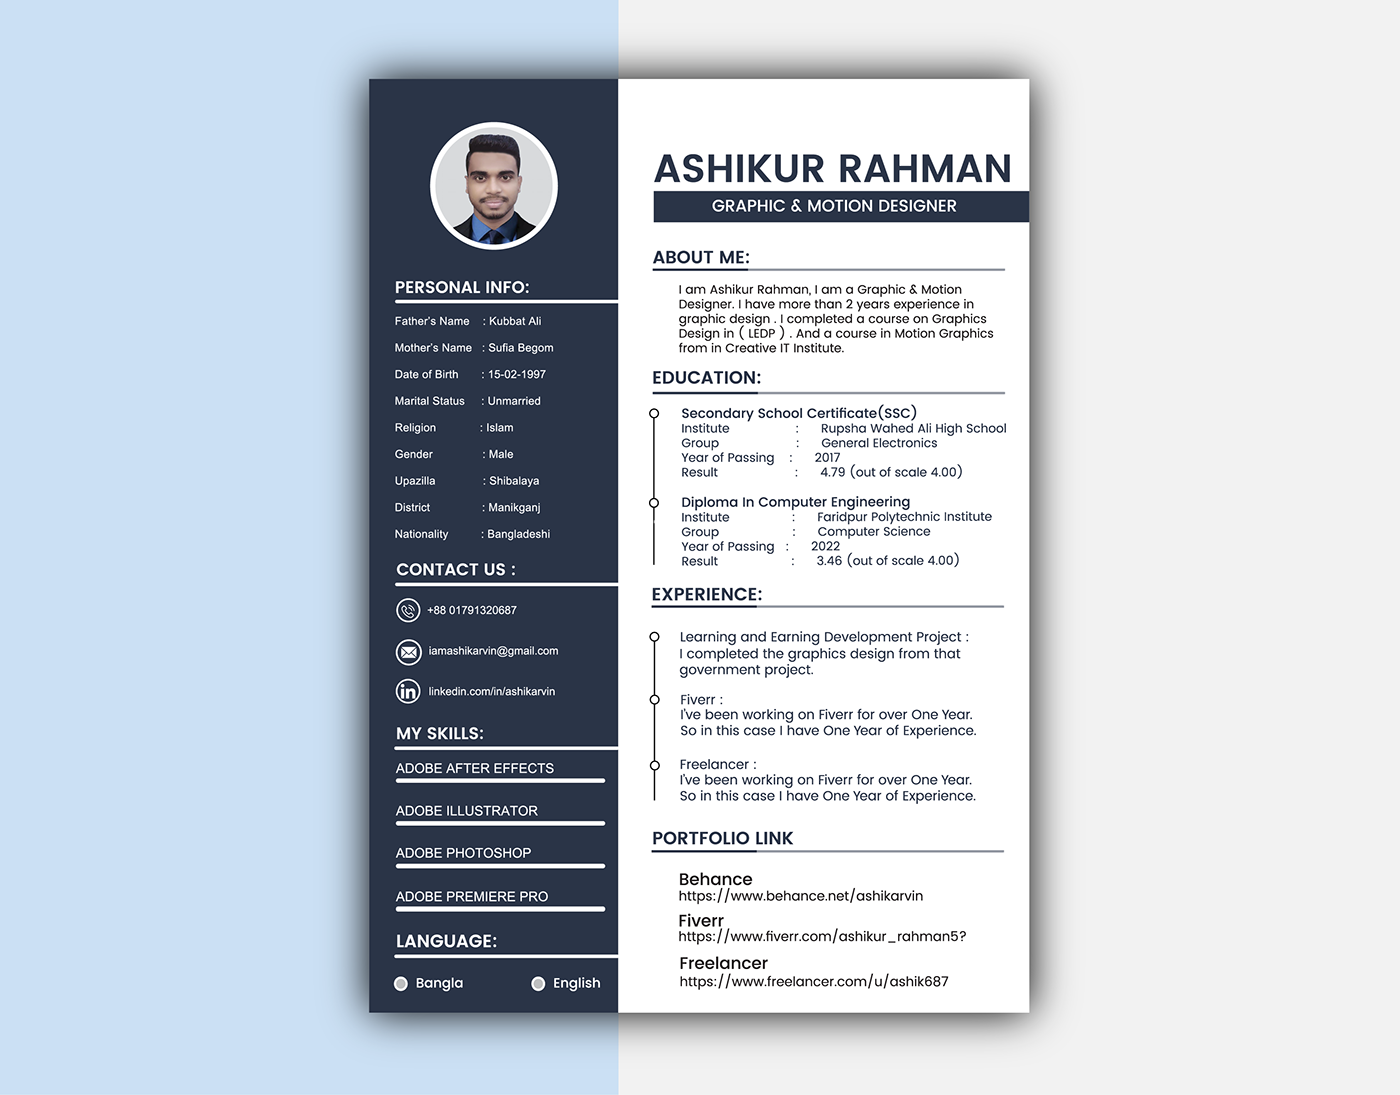 ashikur rahman arvin CV cv design CV Resume CV template portfolio Resume Resume CV resume design resume template